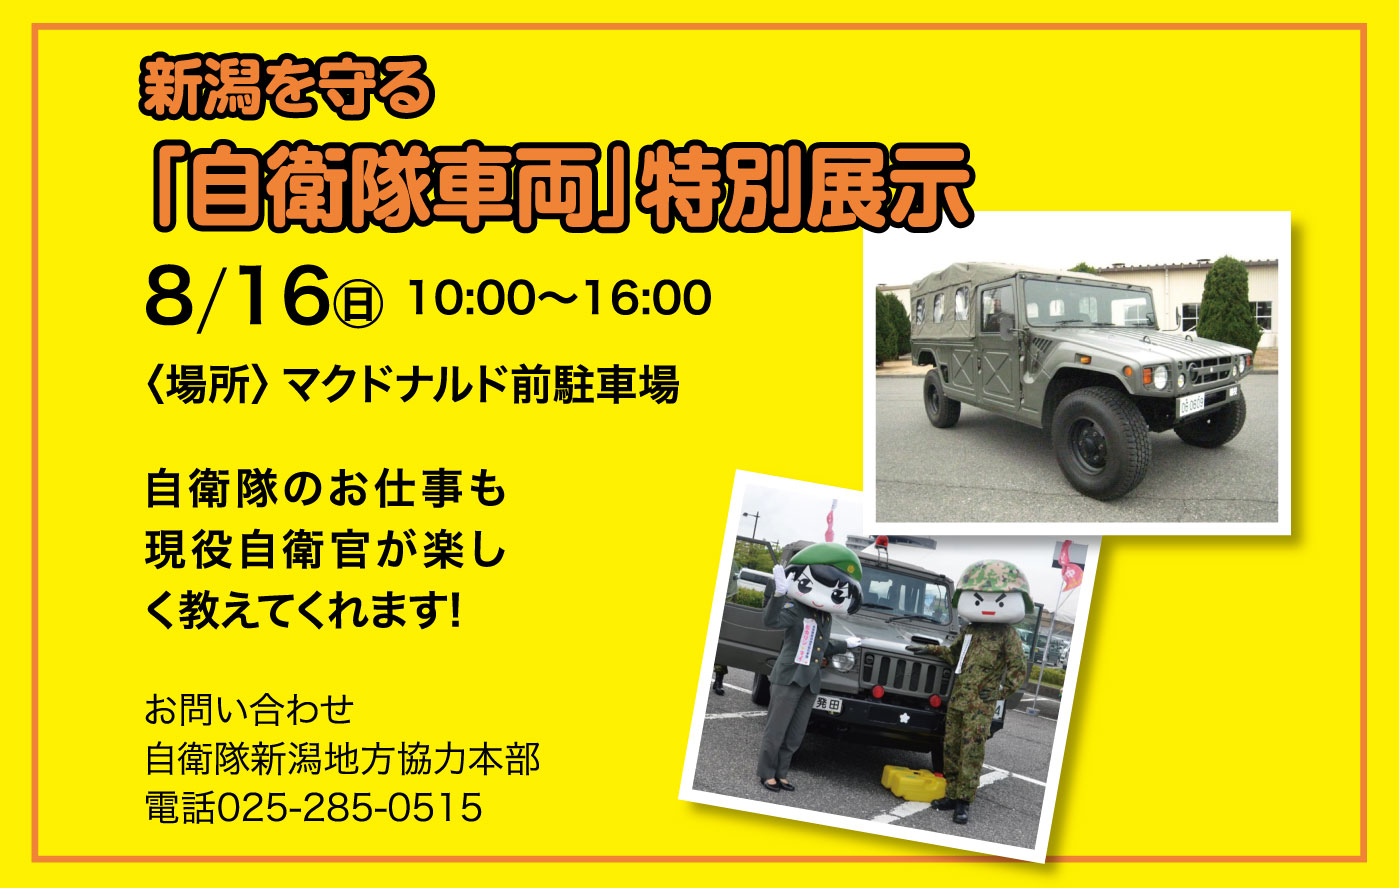 新潟を守る「自衛隊車両」特別展示2020 in DeKKY401ポスター